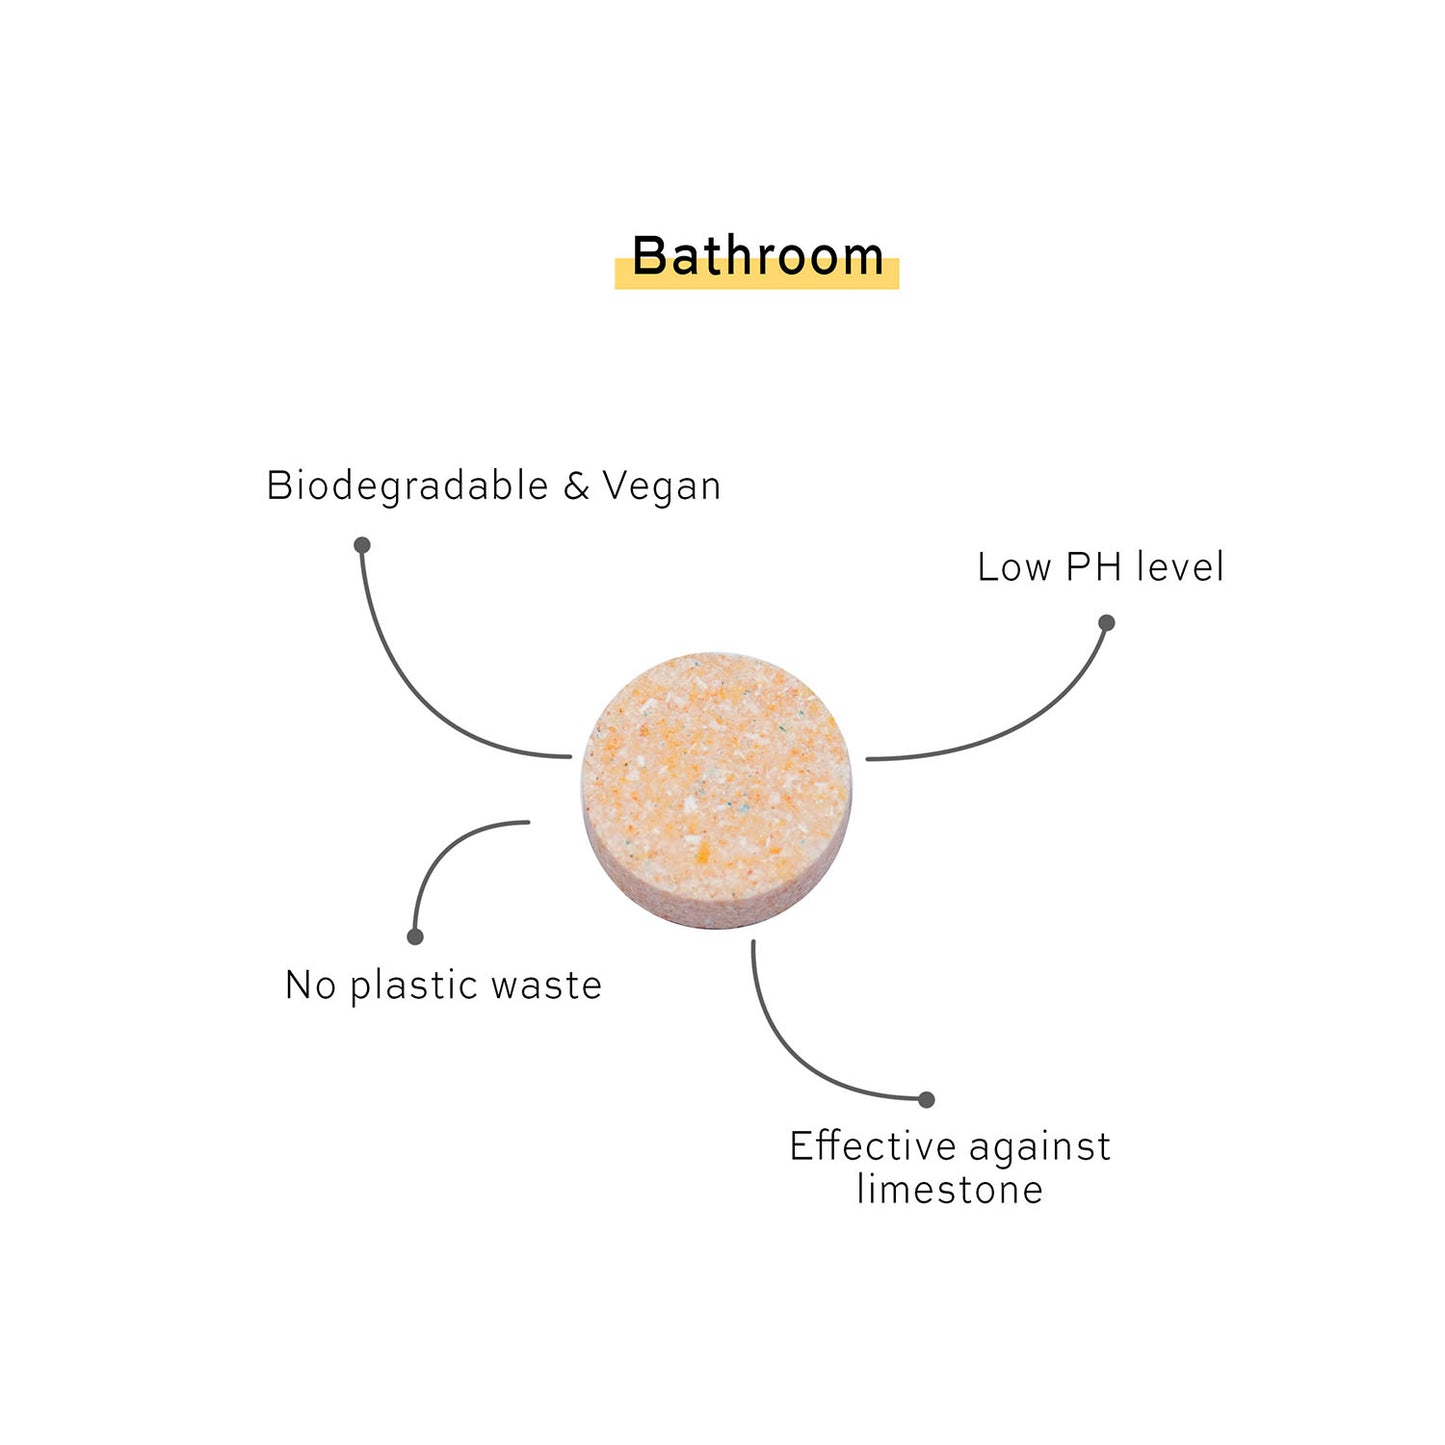 Skosh rengöringstablett för badrum - biodynamiskt nedbrytbar och vegansk, lågt PH-värde, inget plastavfall, effektiv mot kalk